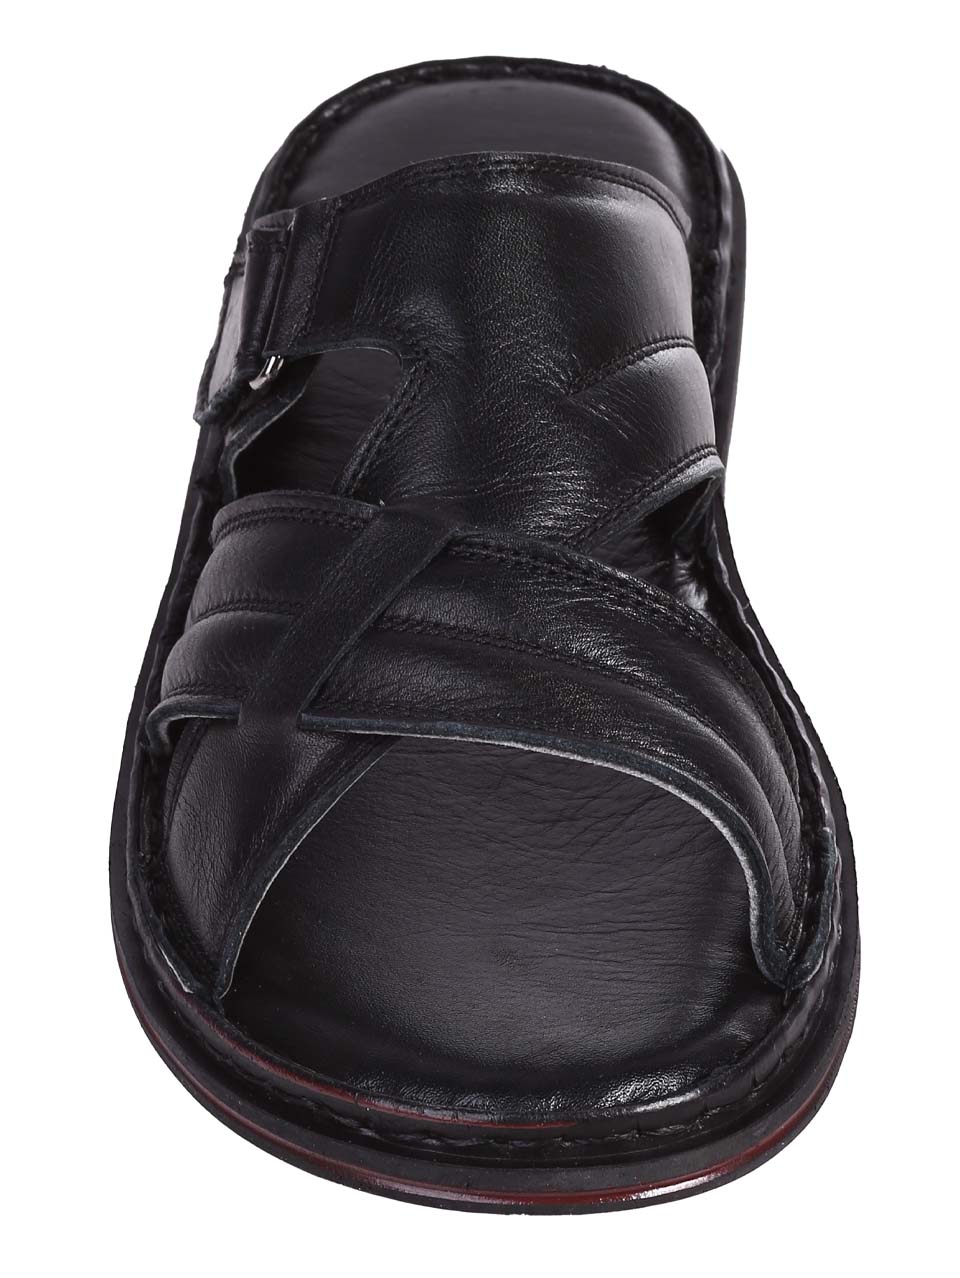 Ежедневни мъжки чехли от естествена кожа в черно 8AT-24391 black